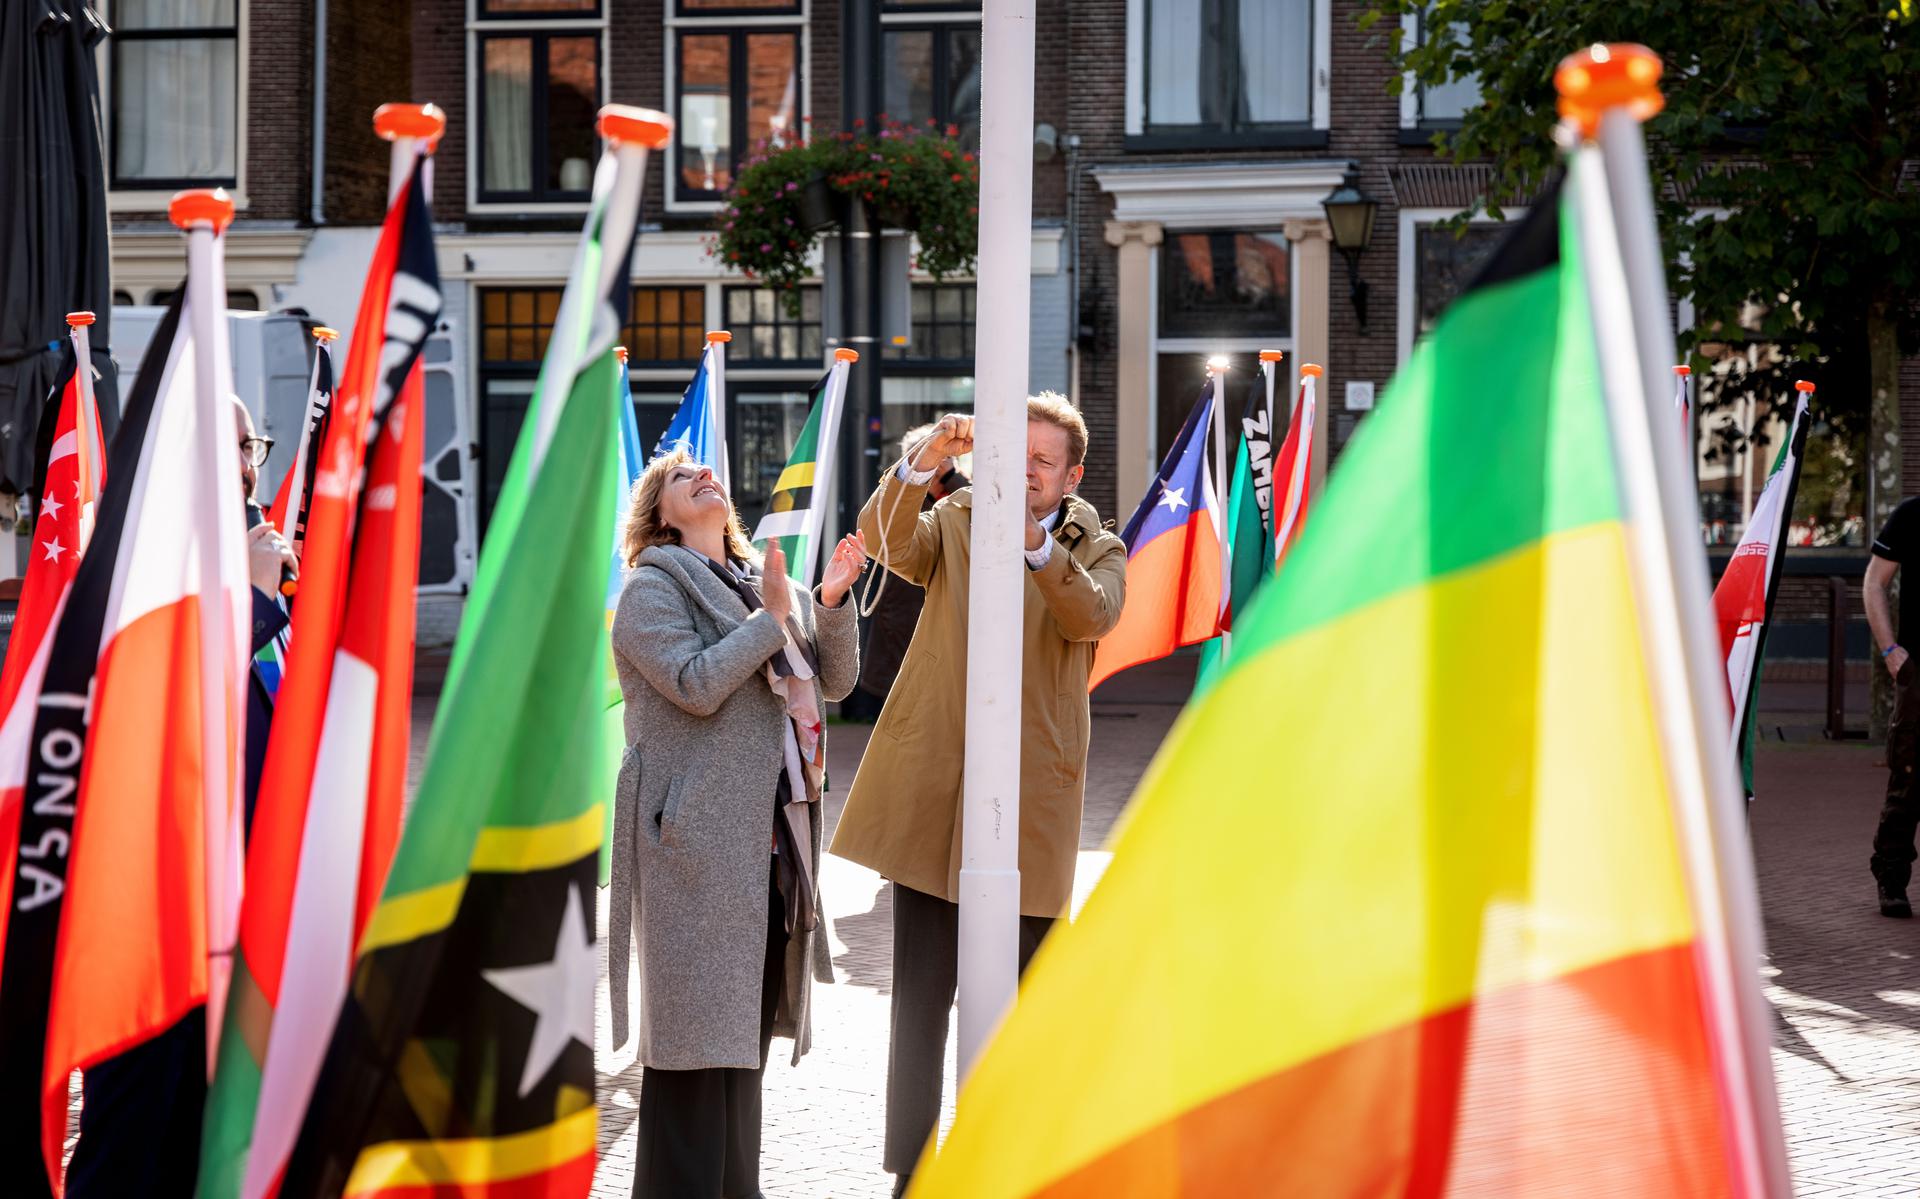 Burgemeester Rob Bats en wethouder Trijn Jongman hesen de regenboogvlag op de Markt.